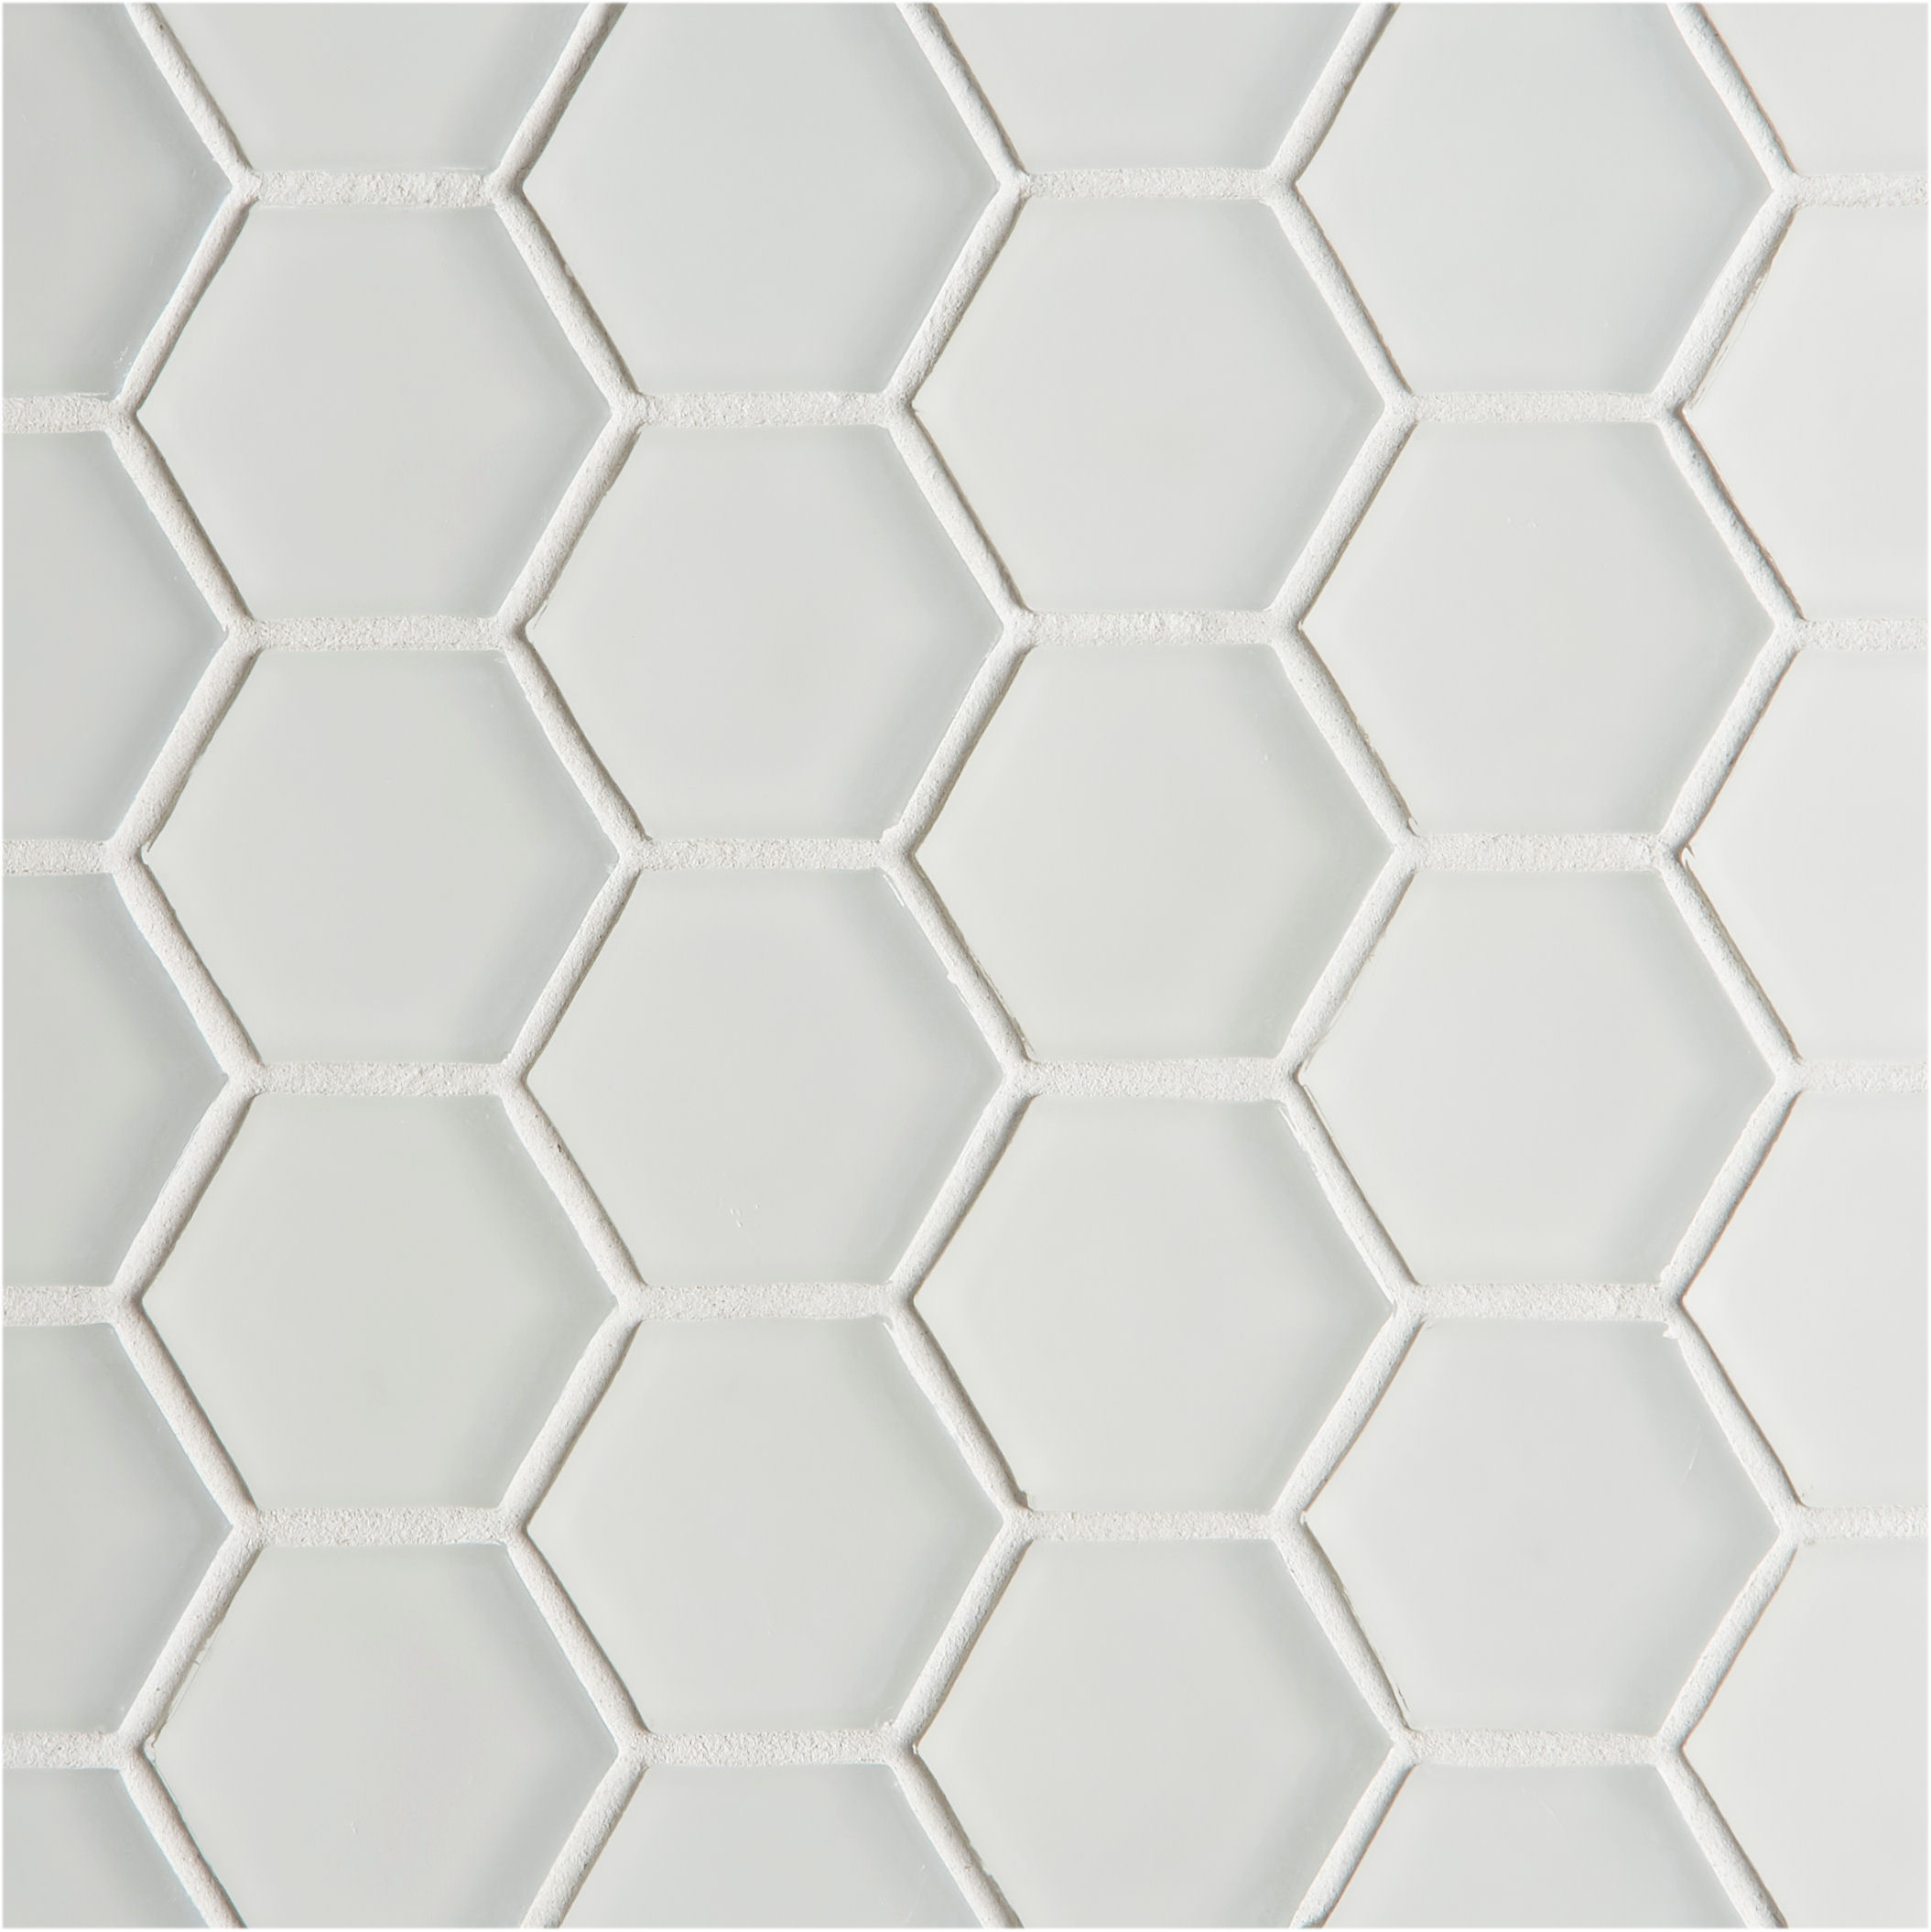 Glacier White Glass Hexagon Mosaic, Hexagon White Tile